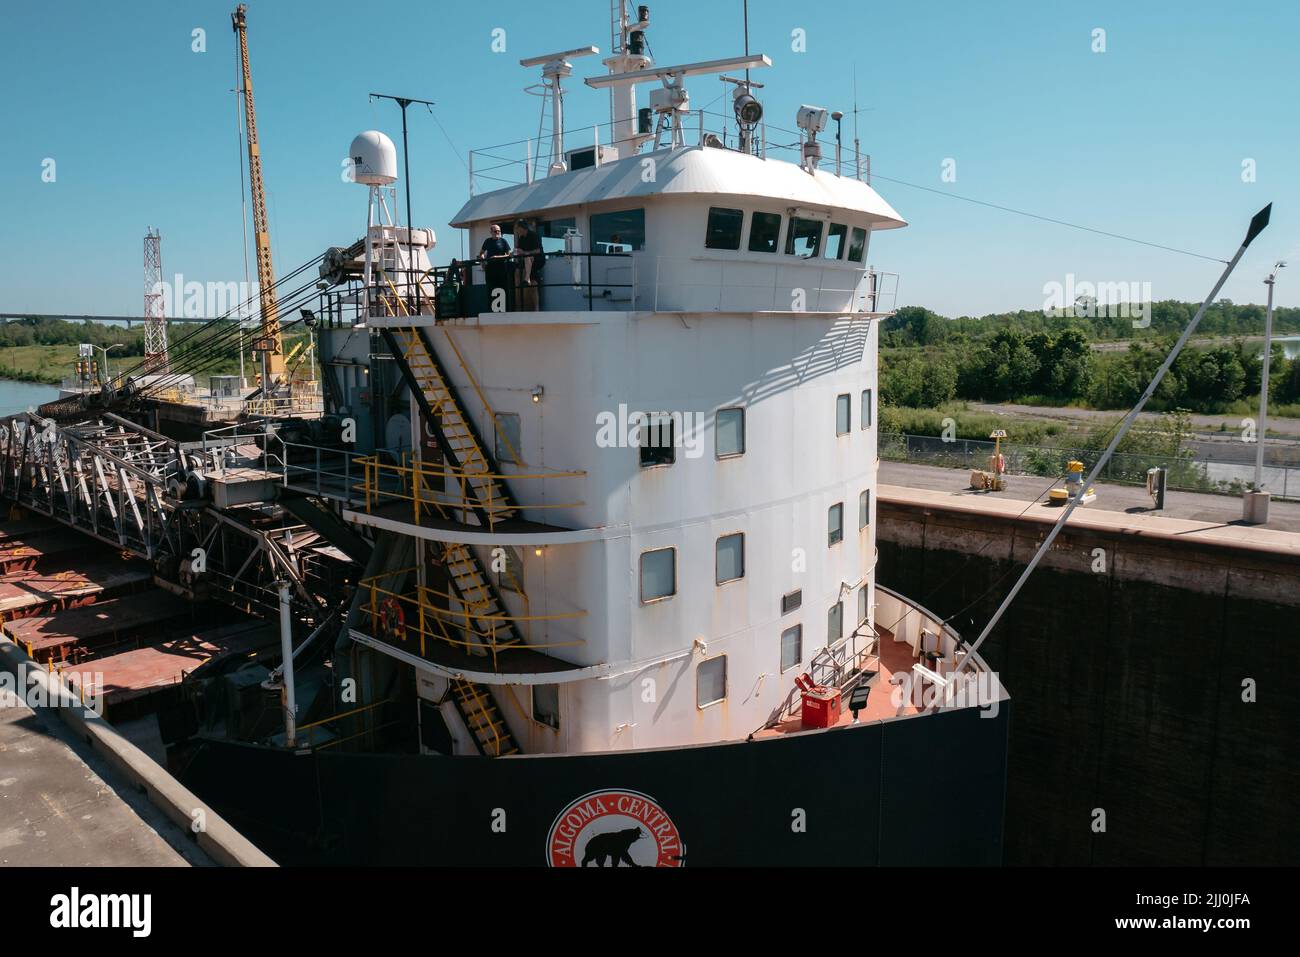 Frachtschiff, das in eine Schleuse im welland-Kanal eindringt Stockfoto